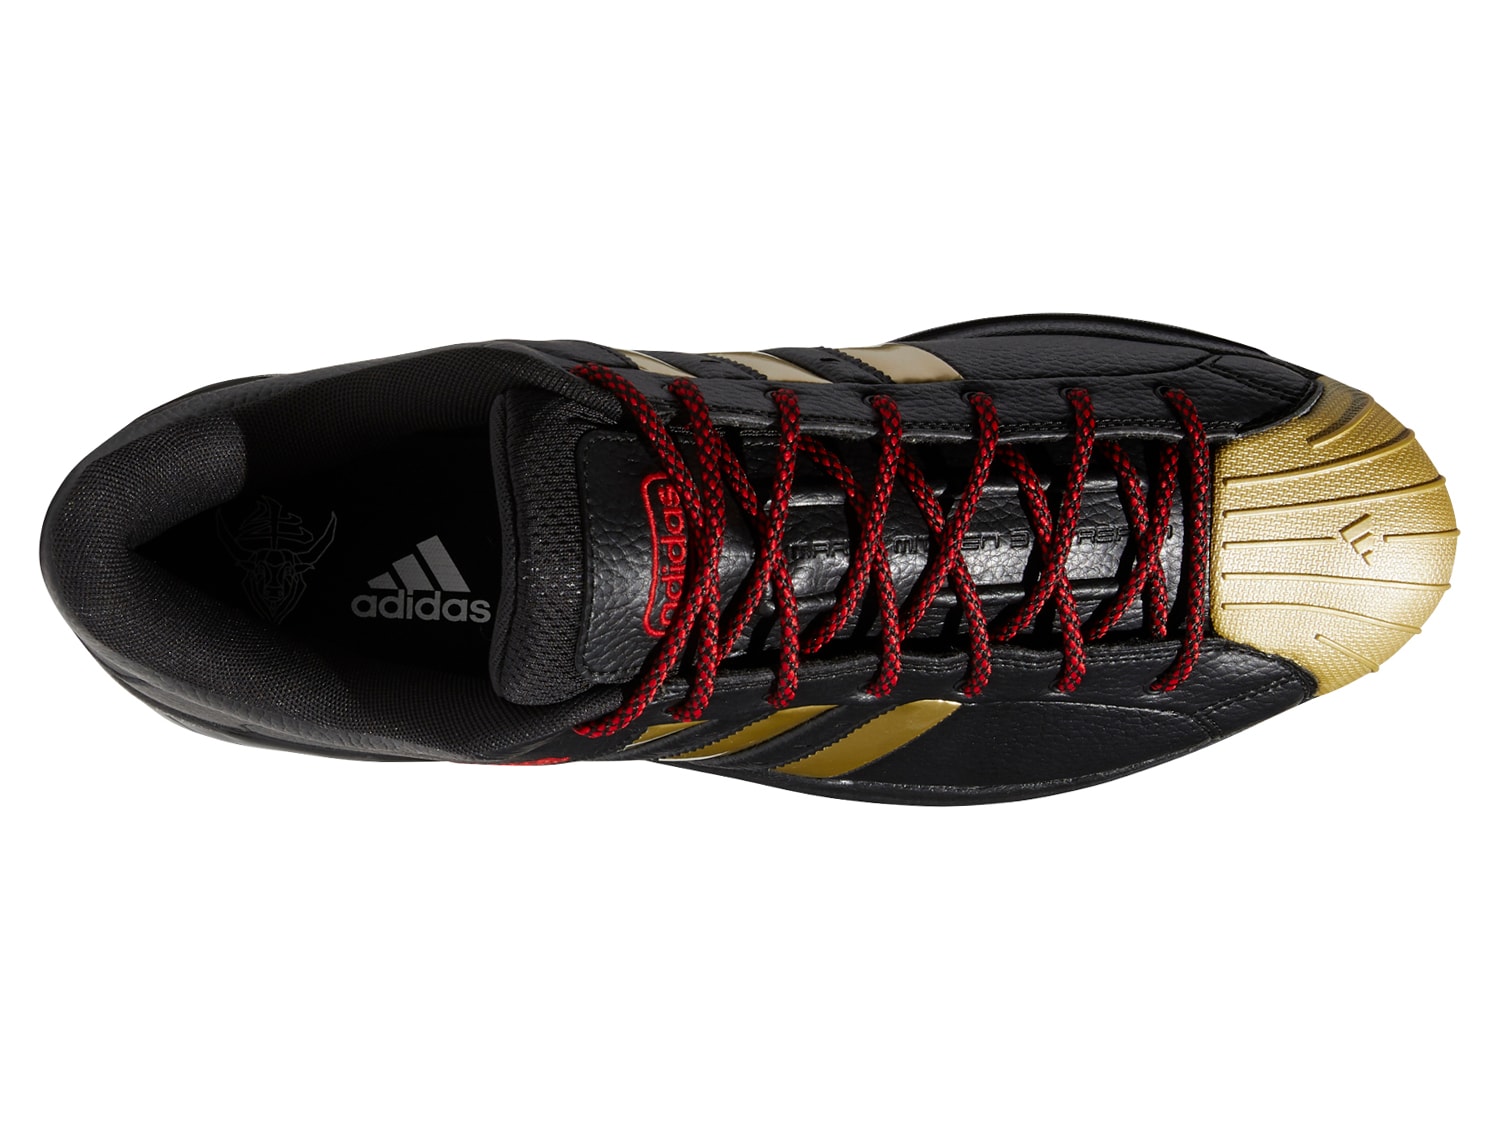 adidas Pro Model 2G Low Basketball Shoe - Men's | DSW